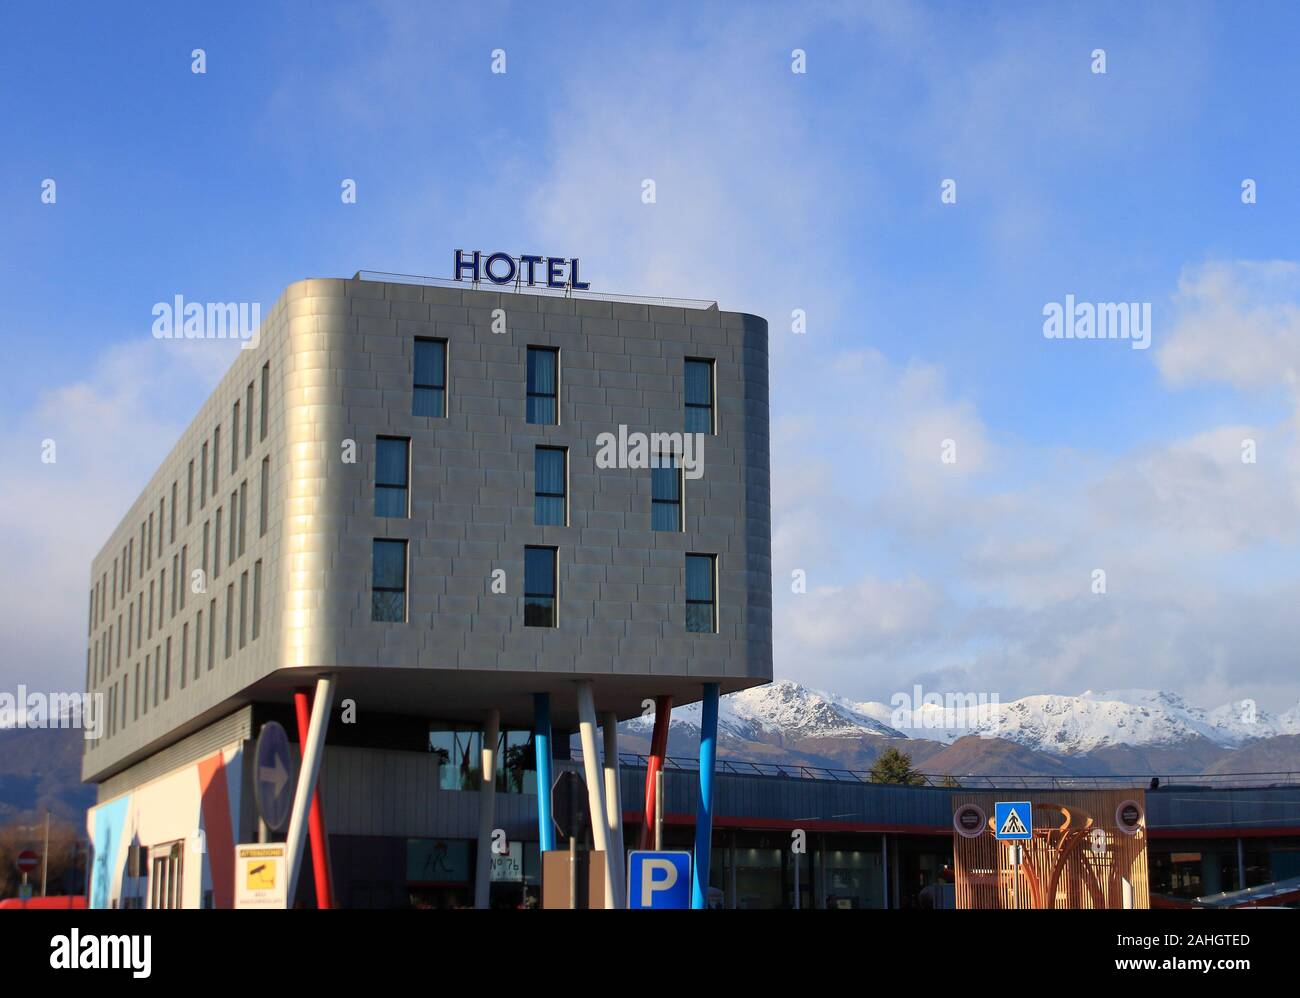 Hotel moderno con piastrelle in acciaio, Alpi Italiane paesaggio, costruito nel 2006 per Olimpiade invernale. È possibile vedere una riproduzione della Olympic torch in legno Foto Stock